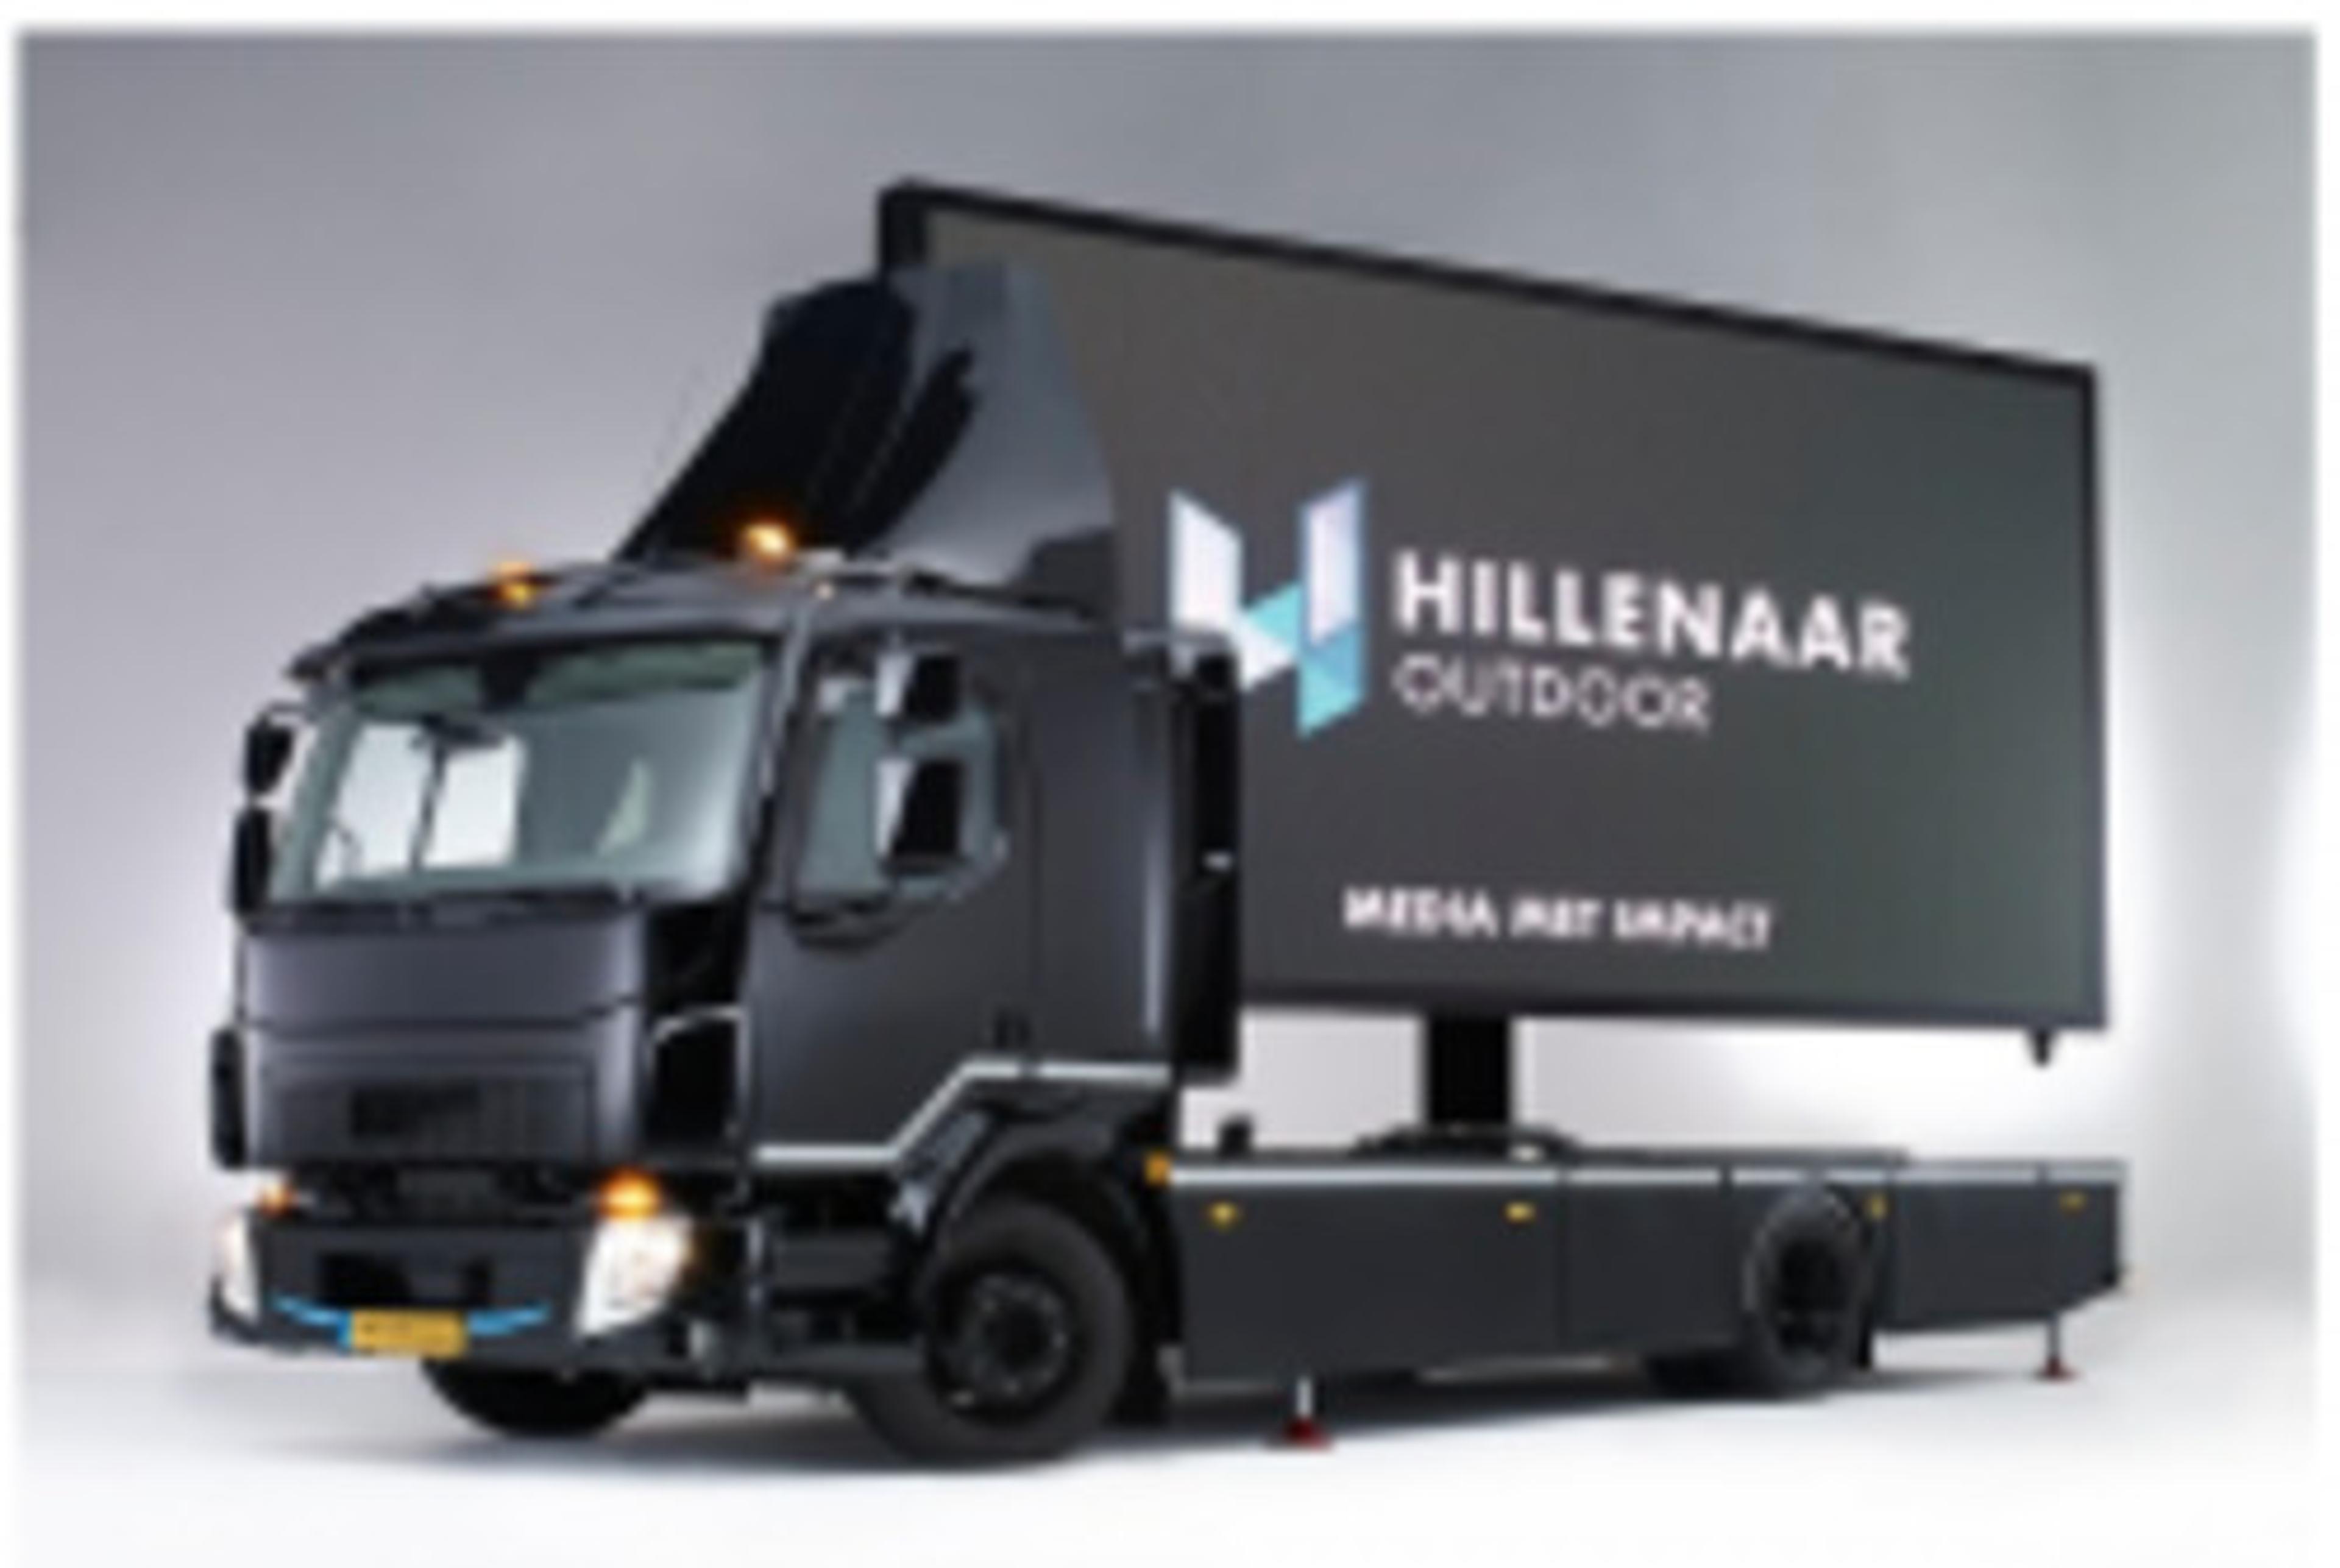 The Digital Truck van Hillenaar